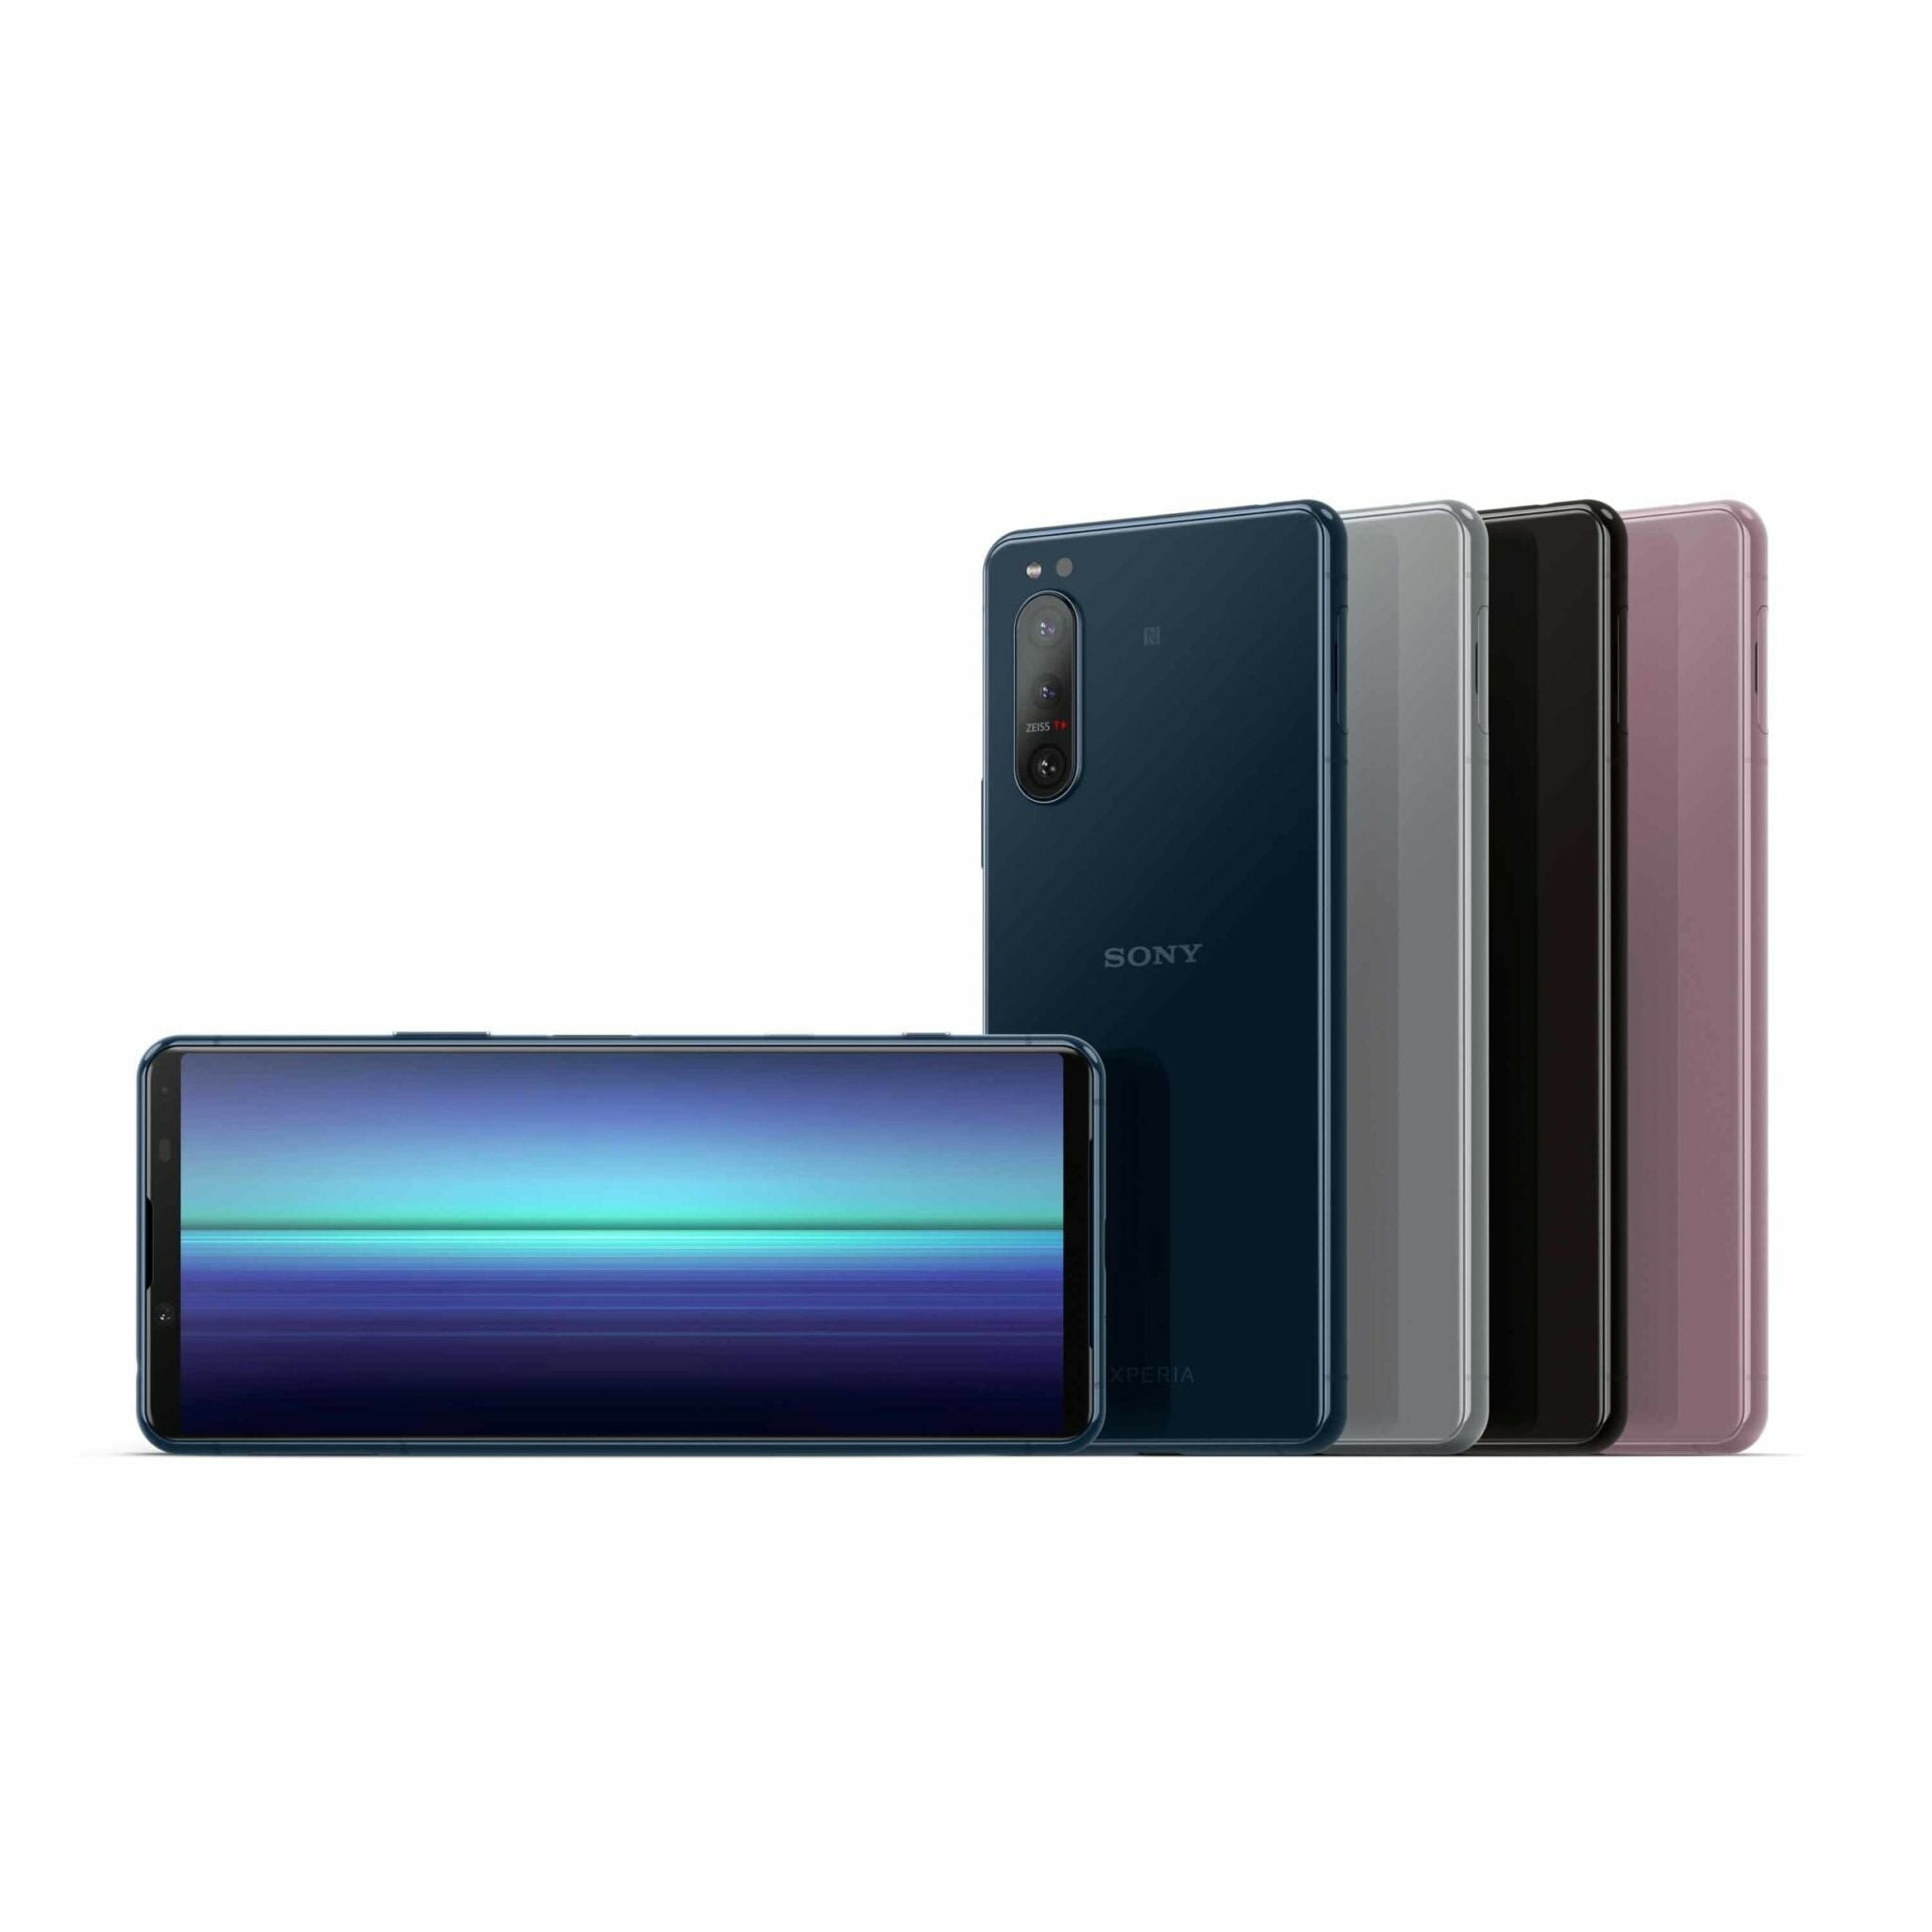 โซนี่ไทยเปิดตัว Xperia 5 II สมาร์ทโฟนขนาดกะทัดรัด อัดแน่นเทคโนโลยีสุดล้ำ รองรับ 5G ยกระดับทุกประสบการณ์บันเทิง ถ่ายภาพ และเล่นเกม 1